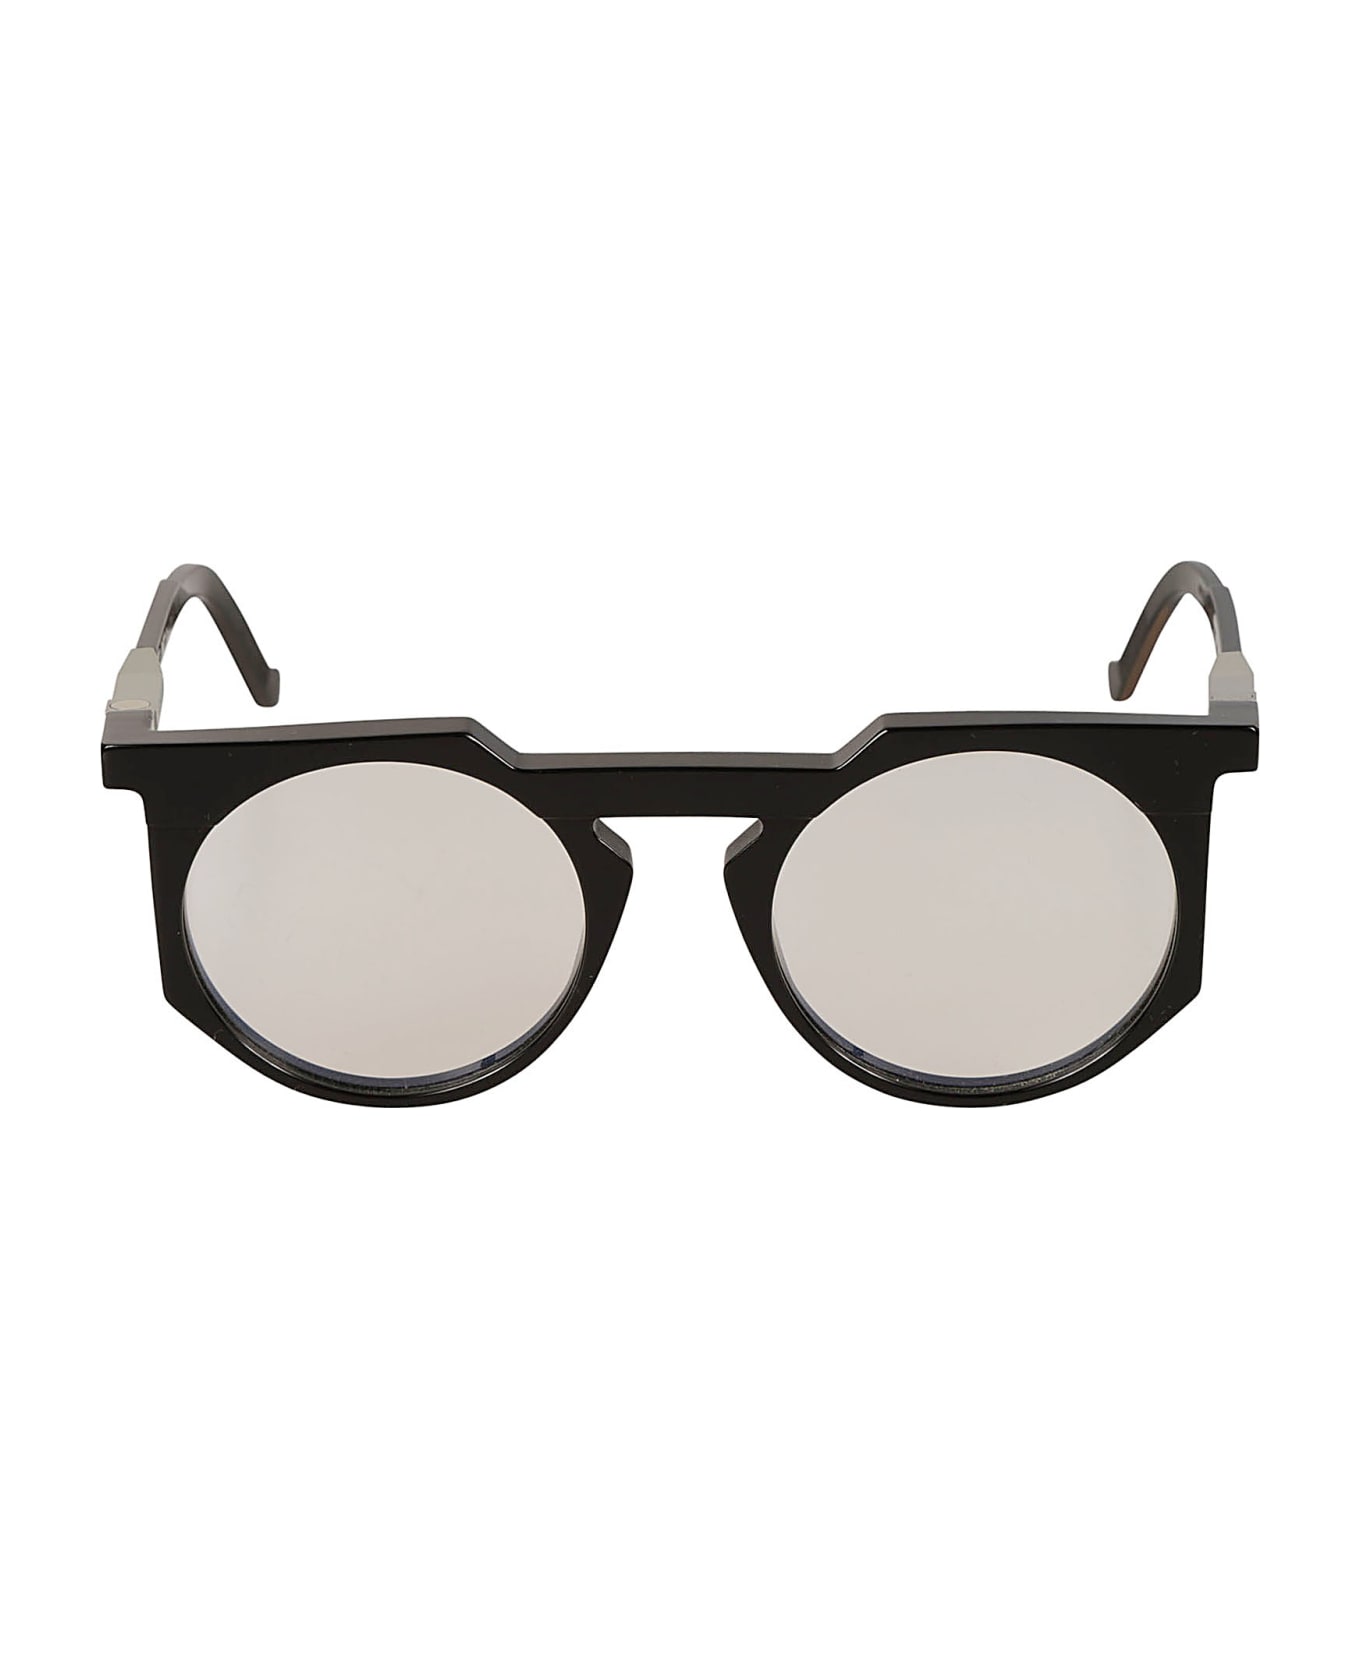 VAVA Clear Lens Round Frame Glasses Glasses - Black